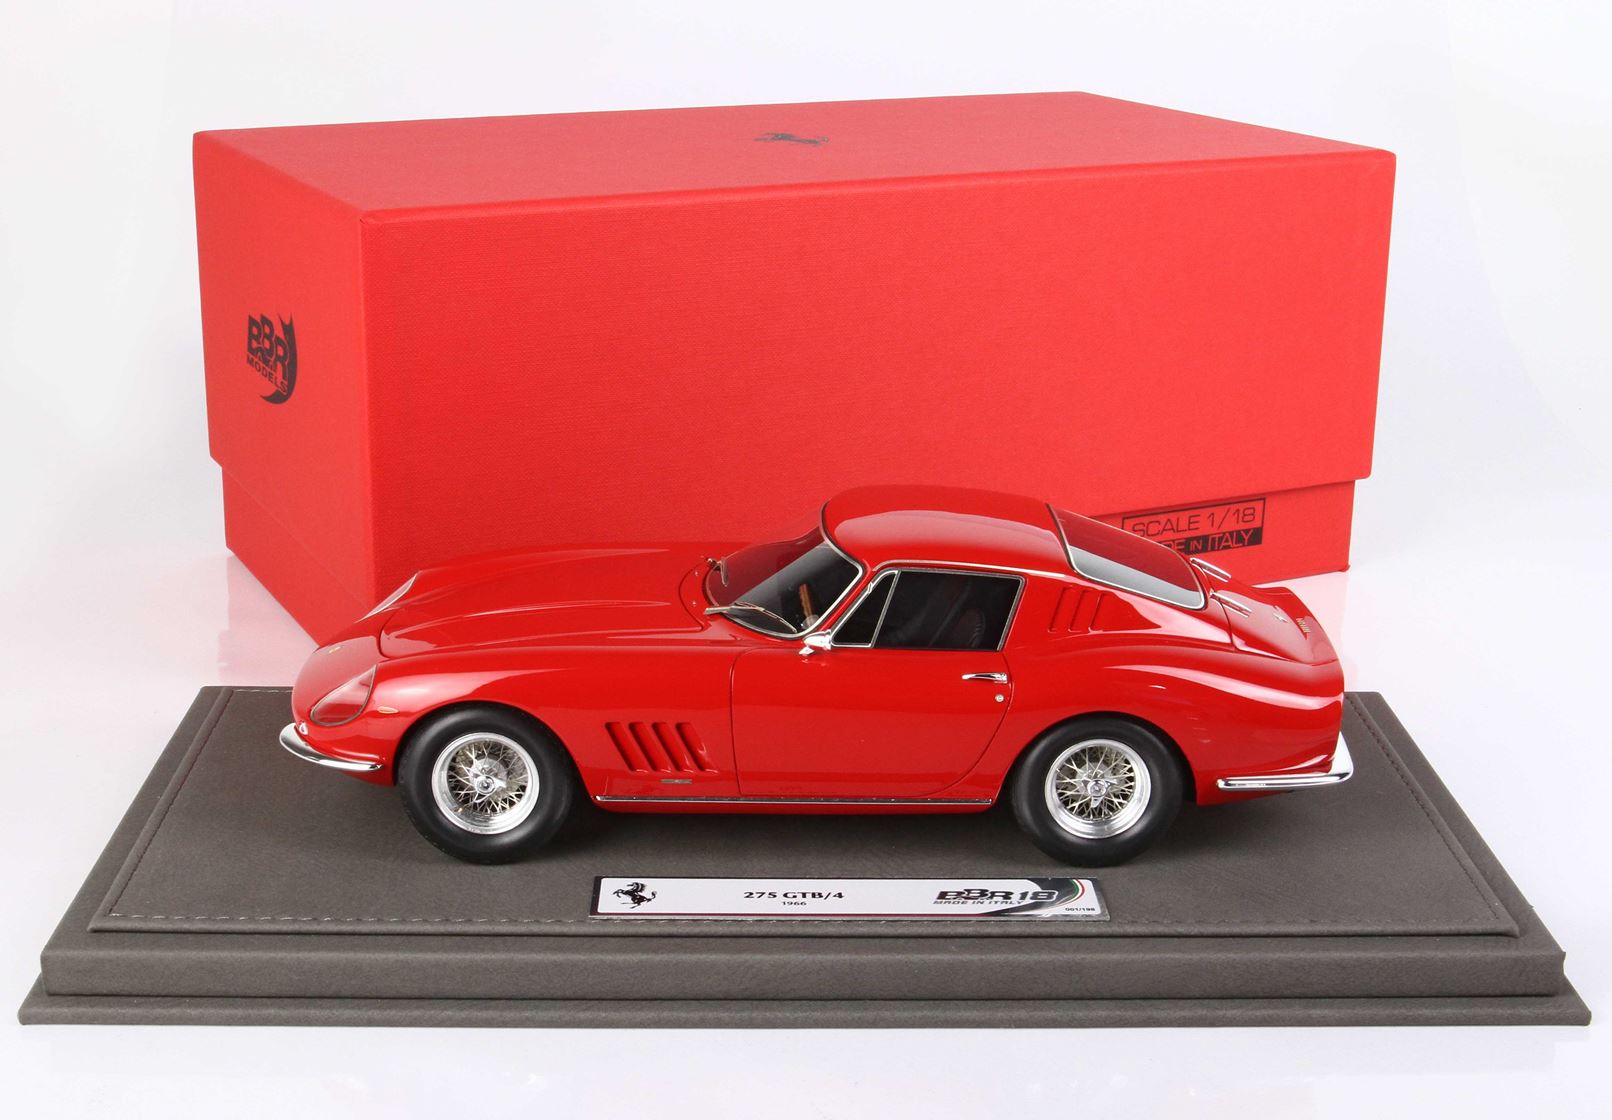 BBR Ferrari 275 GTB/4 1964 1:18 scale red